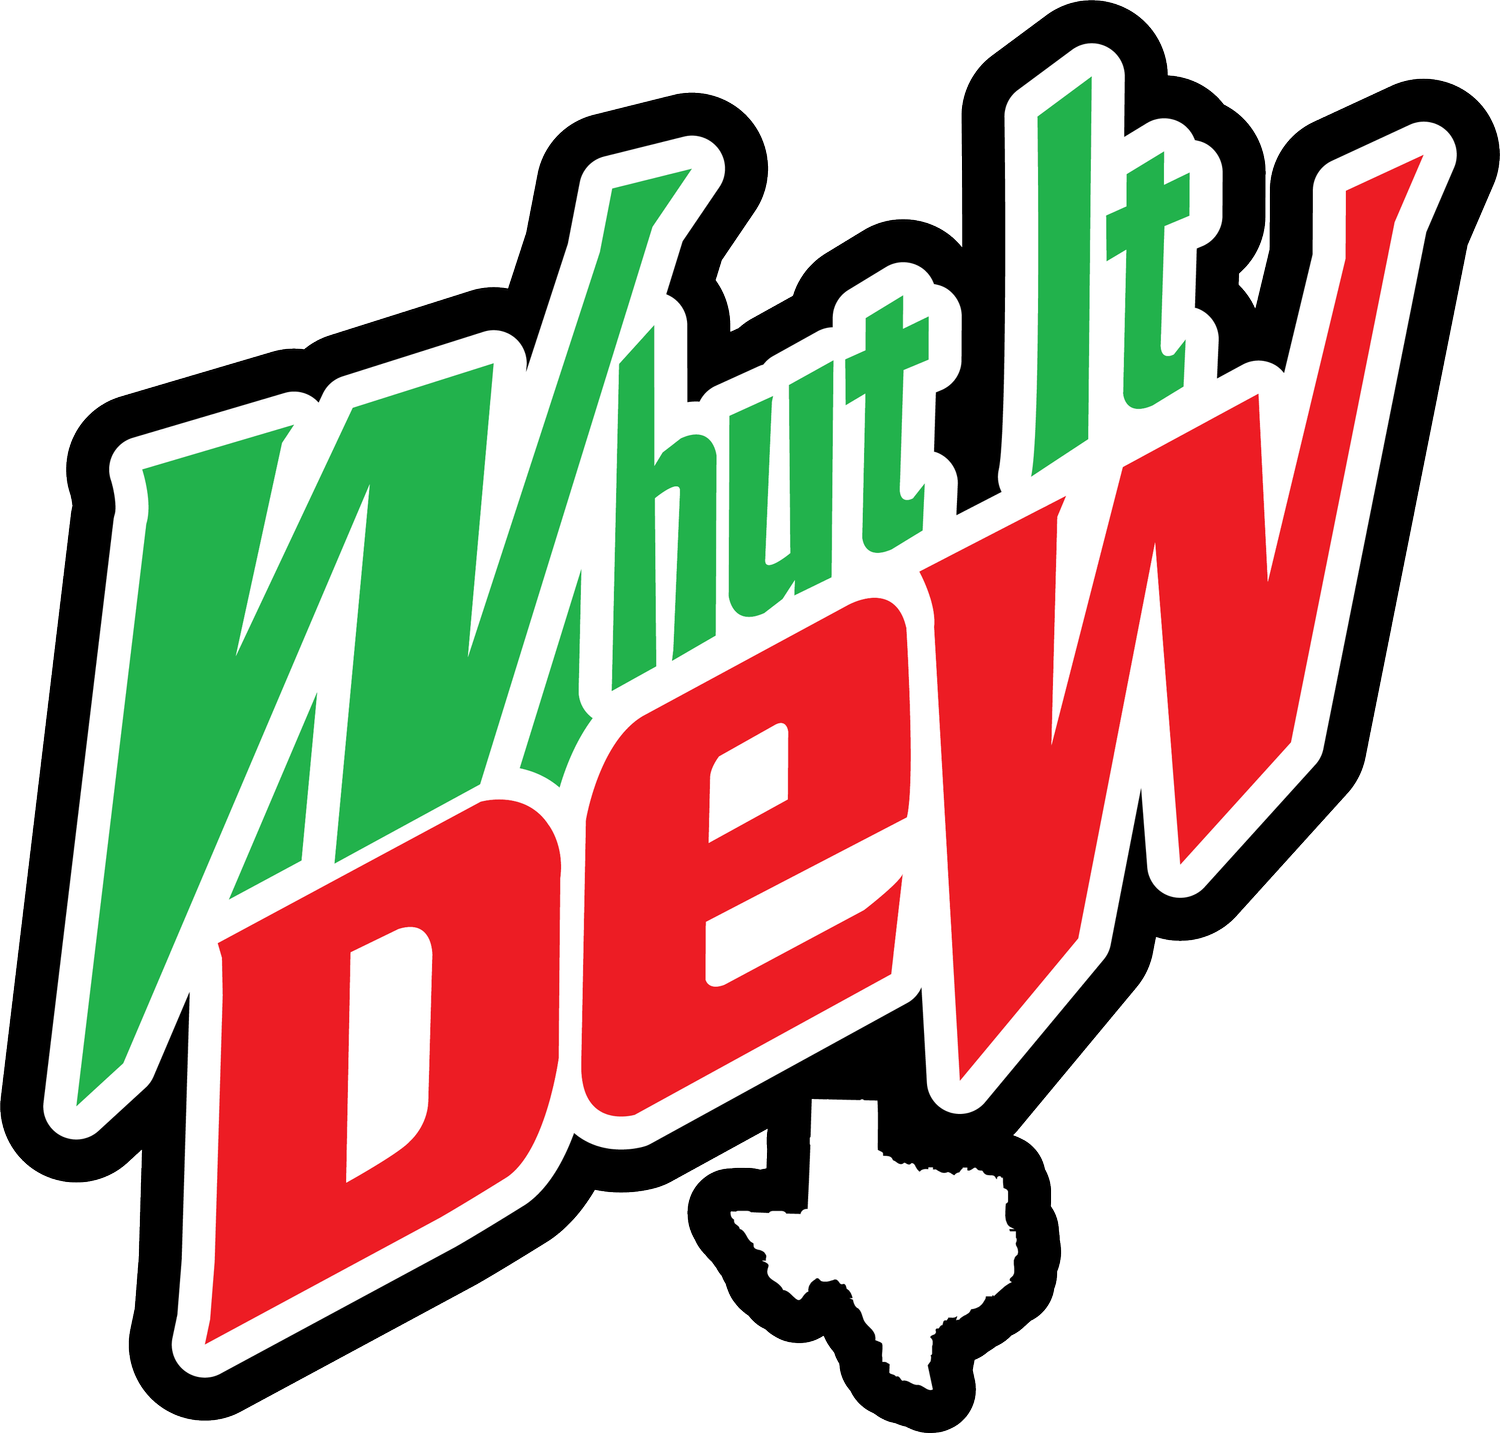 Whut It Dew